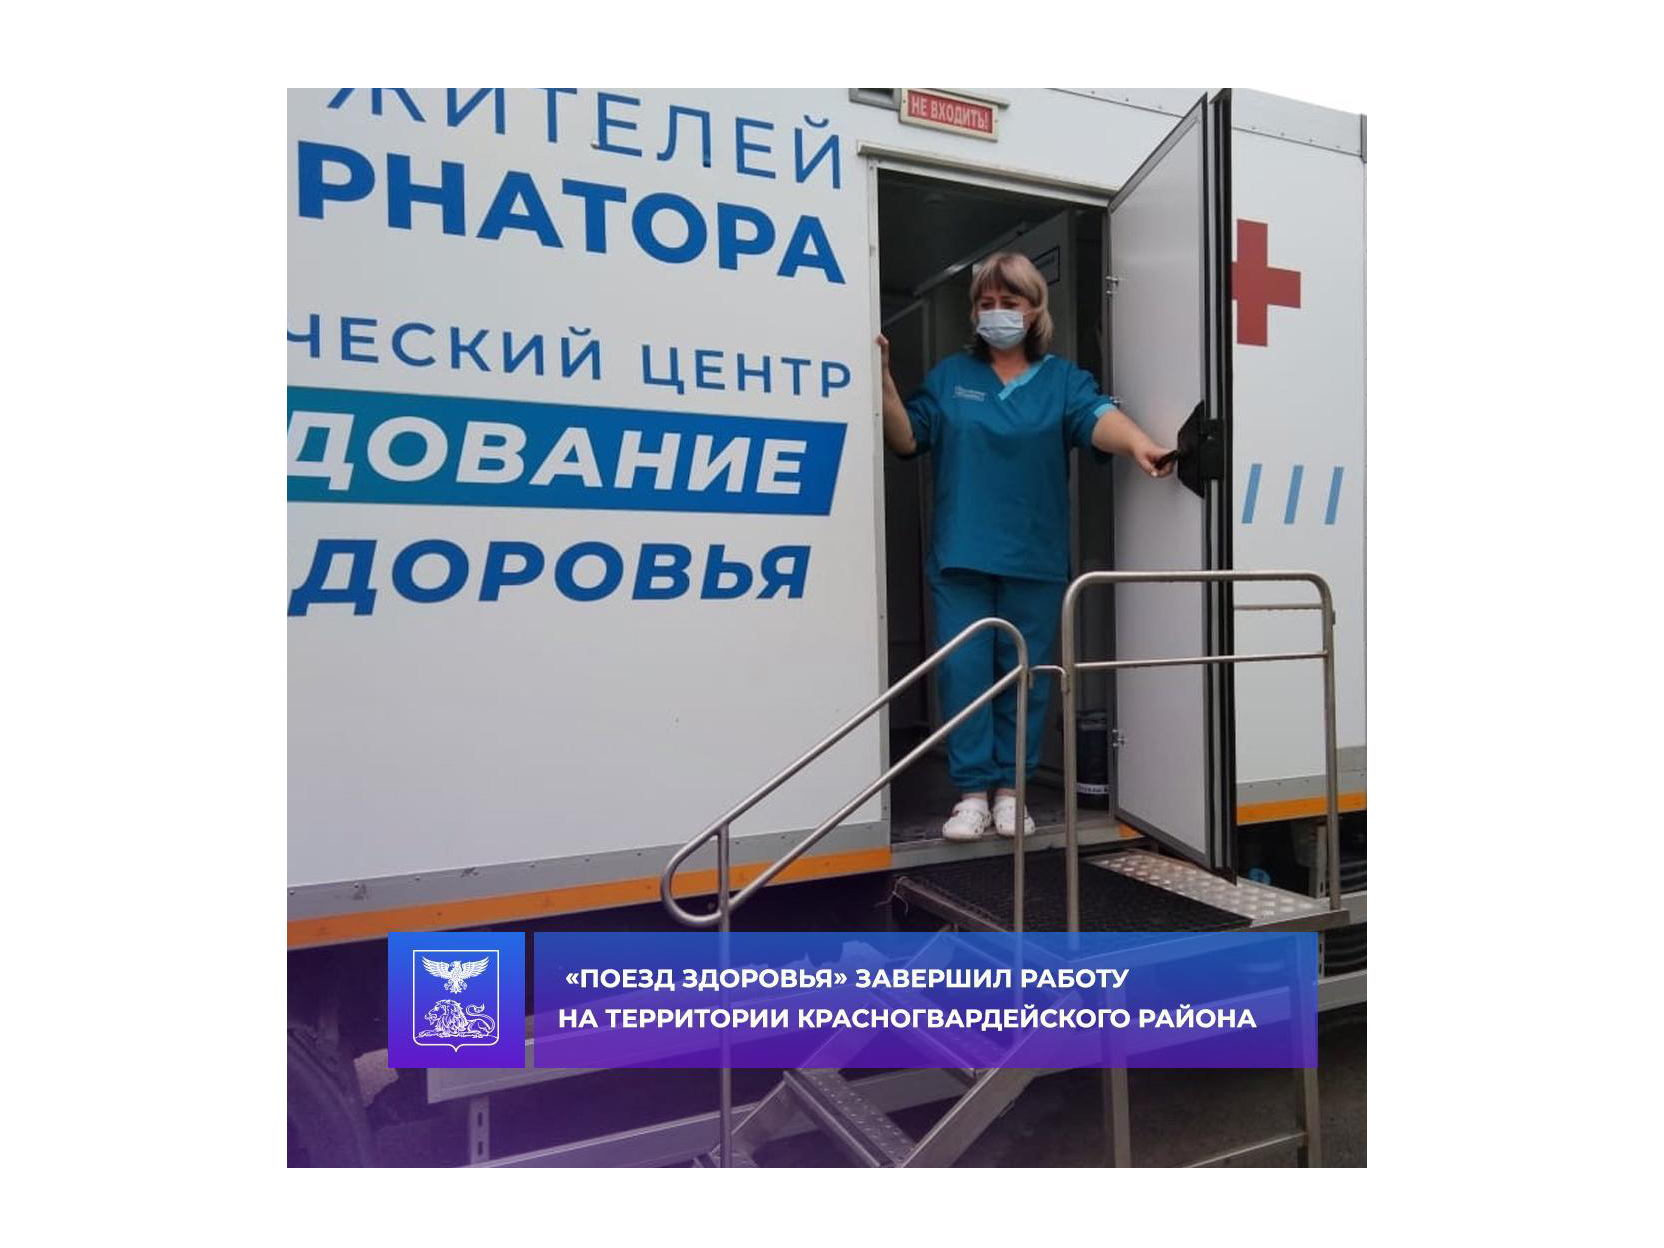 «Поезд здоровья» завершил работу на территории Красногвардейского района.